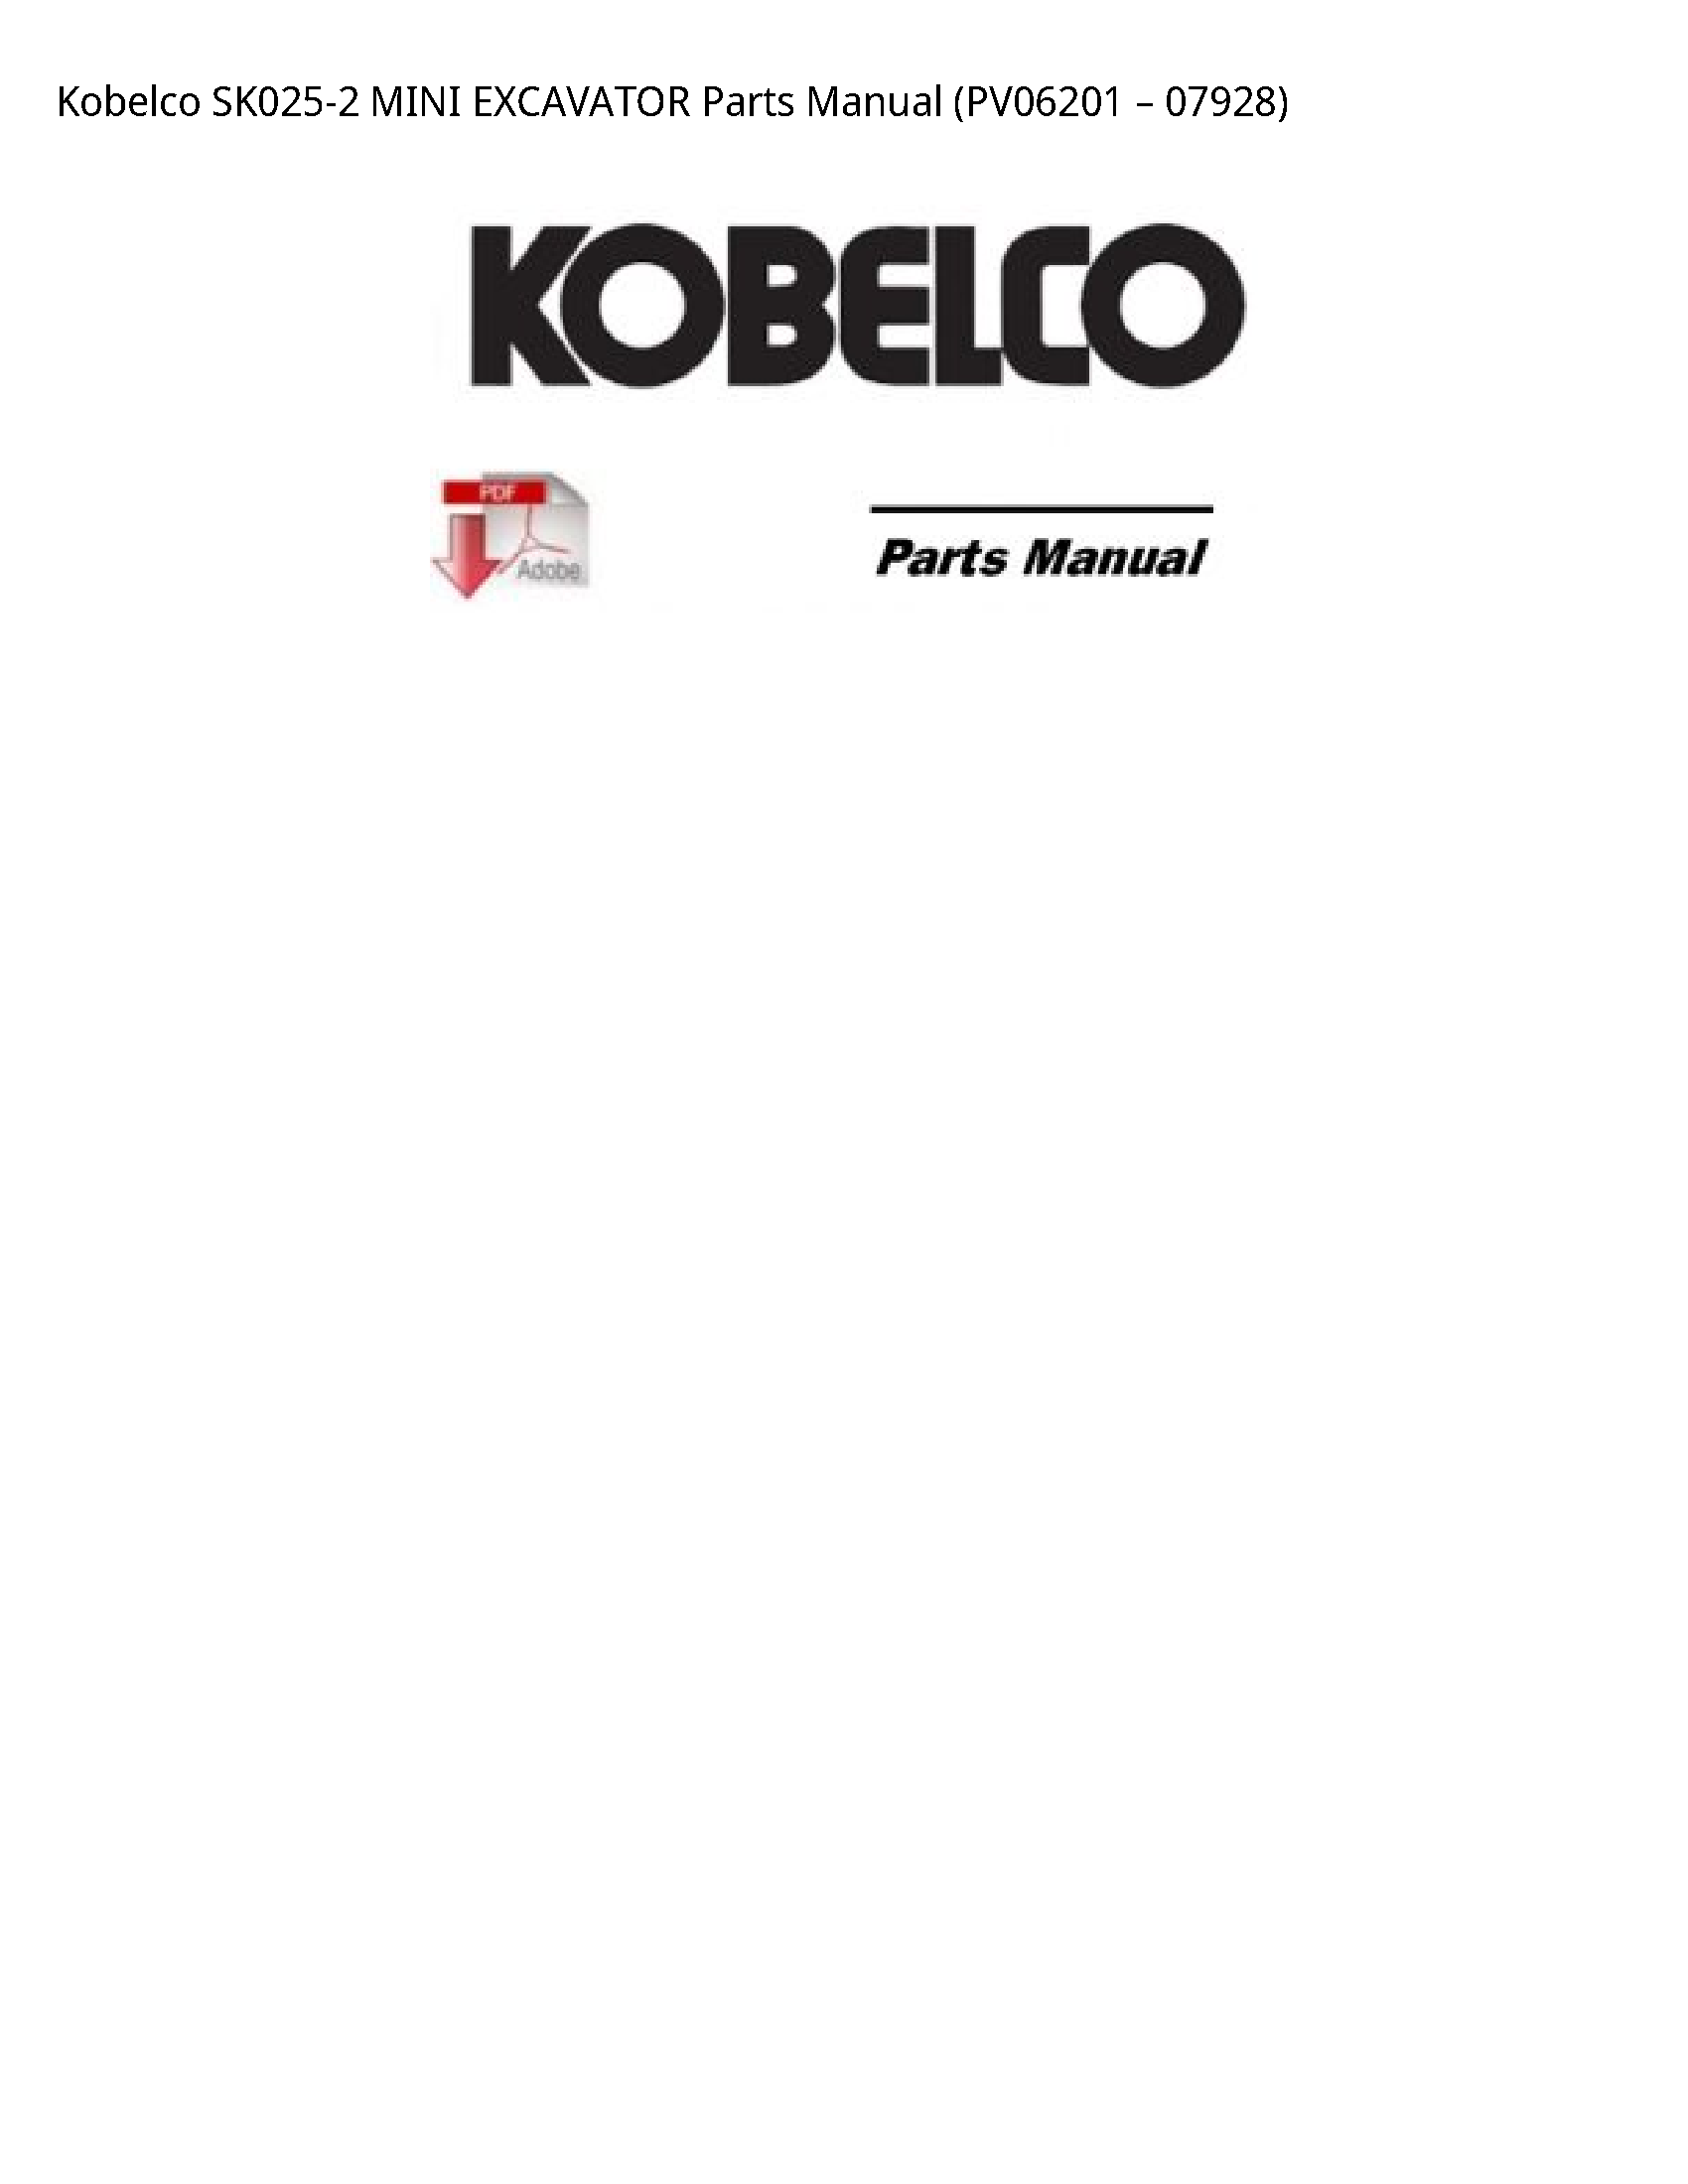 Kobelco SK025-2 MINI EXCAVATOR Parts manual